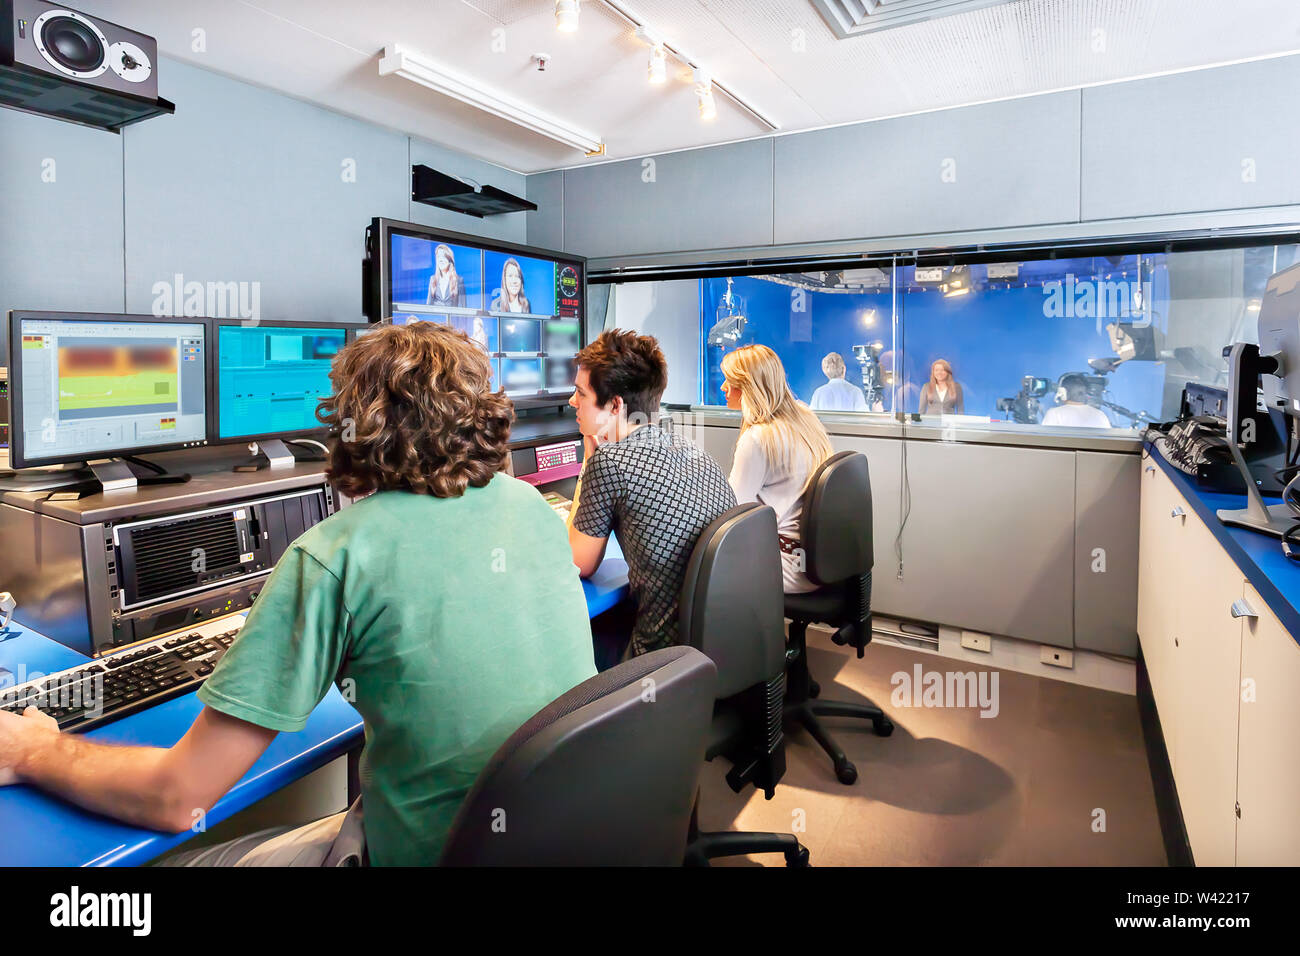 Jungen und Mädchen sind der Arbeit in einem Studio mit Bildschirmen und Mischer für Broadcast ein Fernsehprogramm Stockfoto